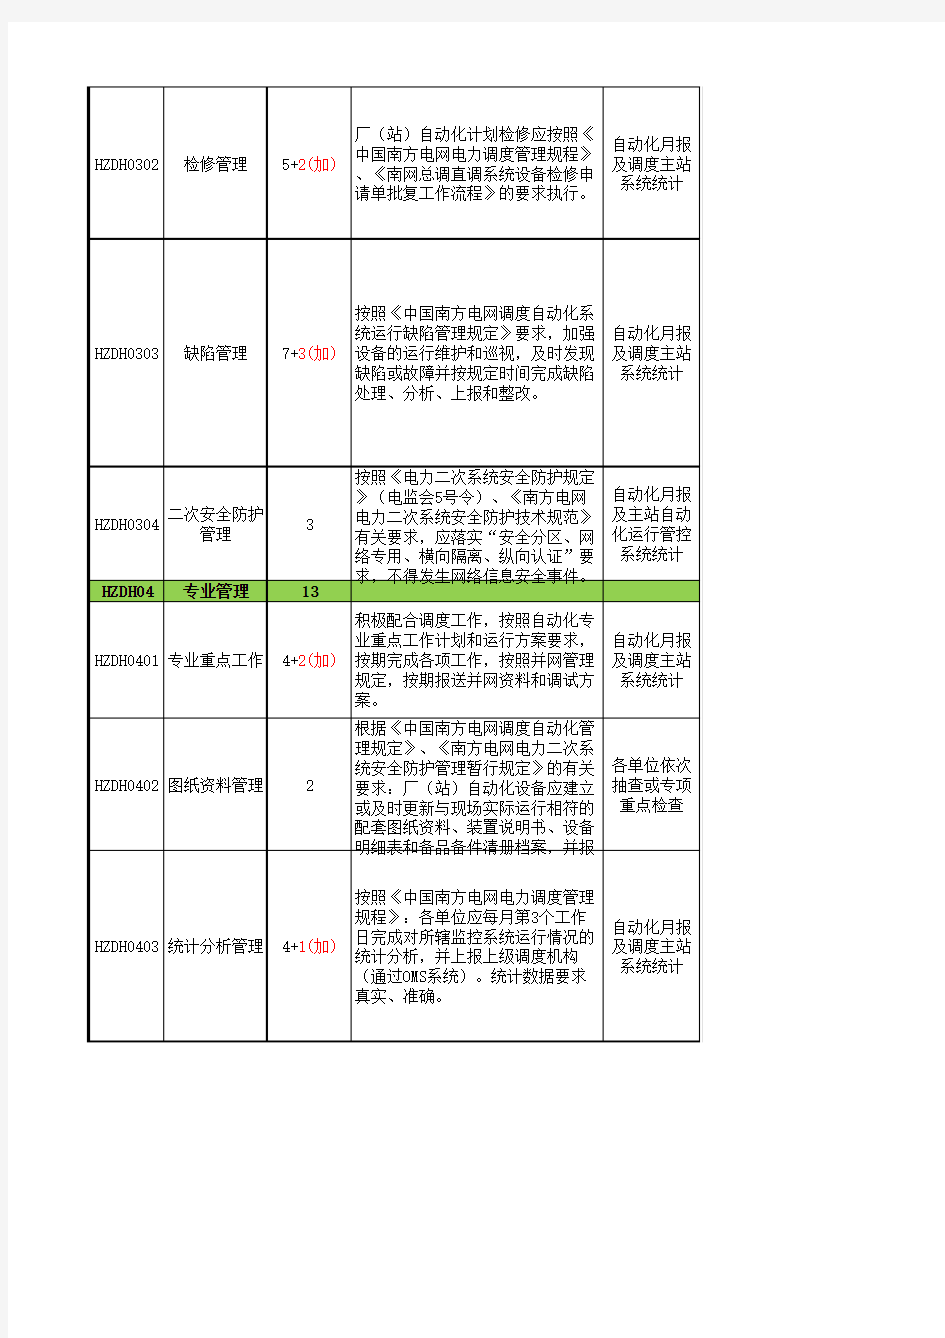 中国南方电网调度工作评价标准(火电分册)